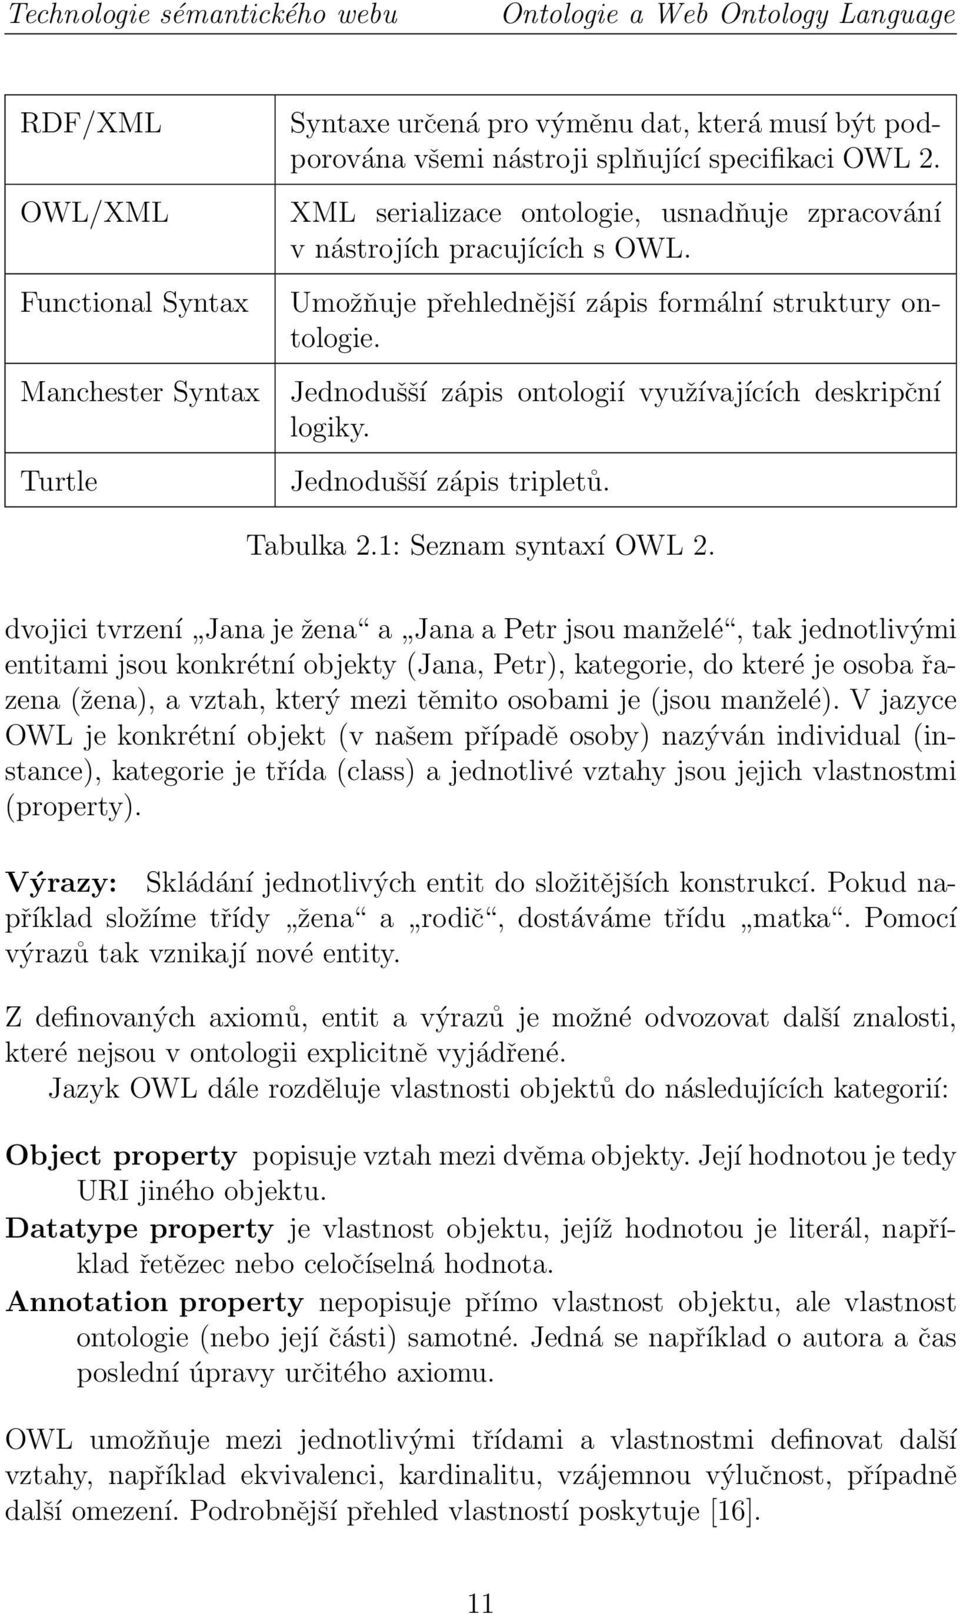 Jednodušší zápis ontologií využívajících deskripční logiky. Jednodušší zápis tripletů. Tabulka 2.: Seznam syntaxí OWL 2.